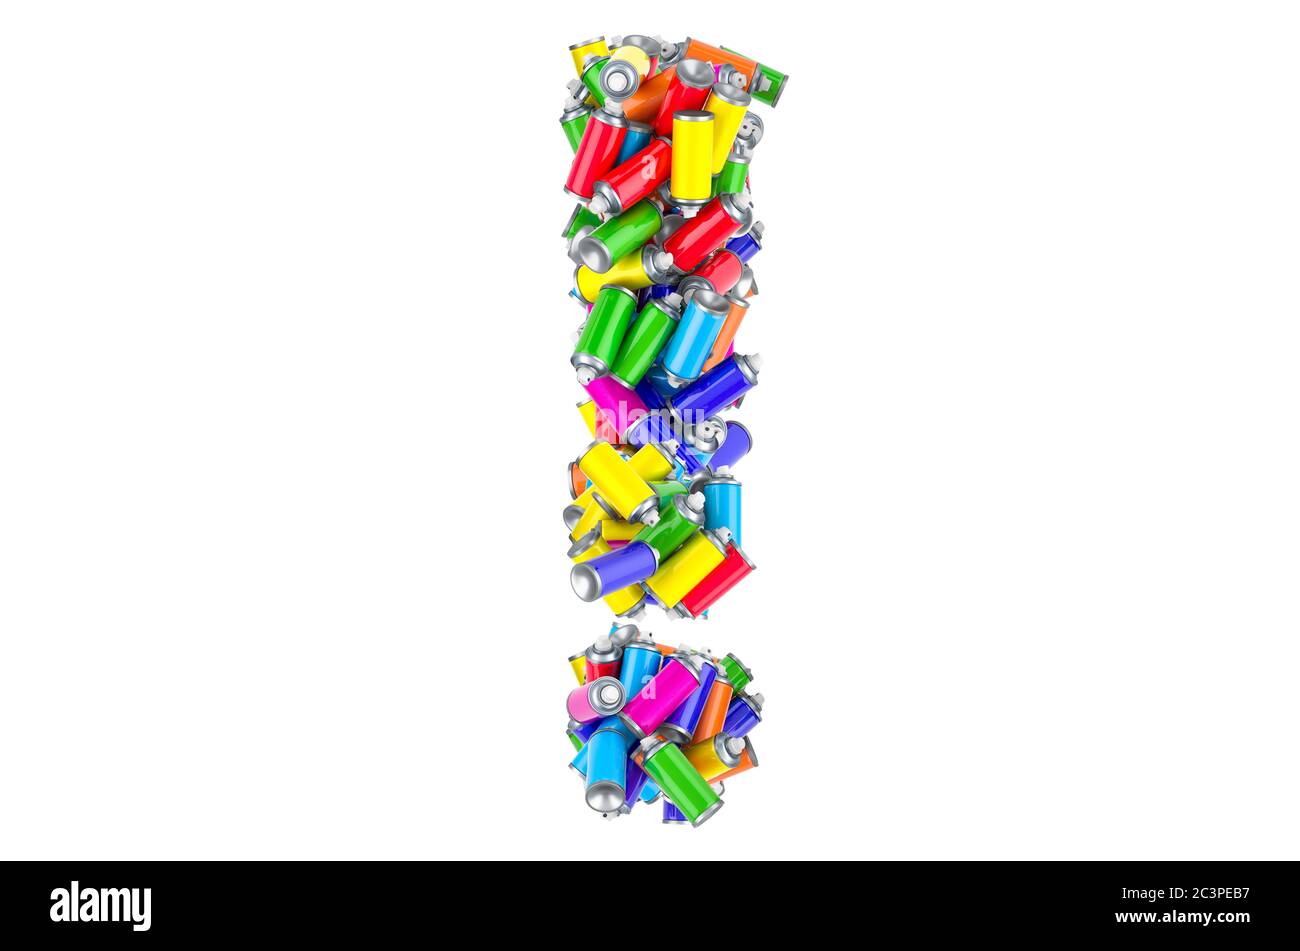 Signo de exclamación de las latas de pintura en aerosol de color, representación 3D aislada sobre fondo blanco Foto de stock